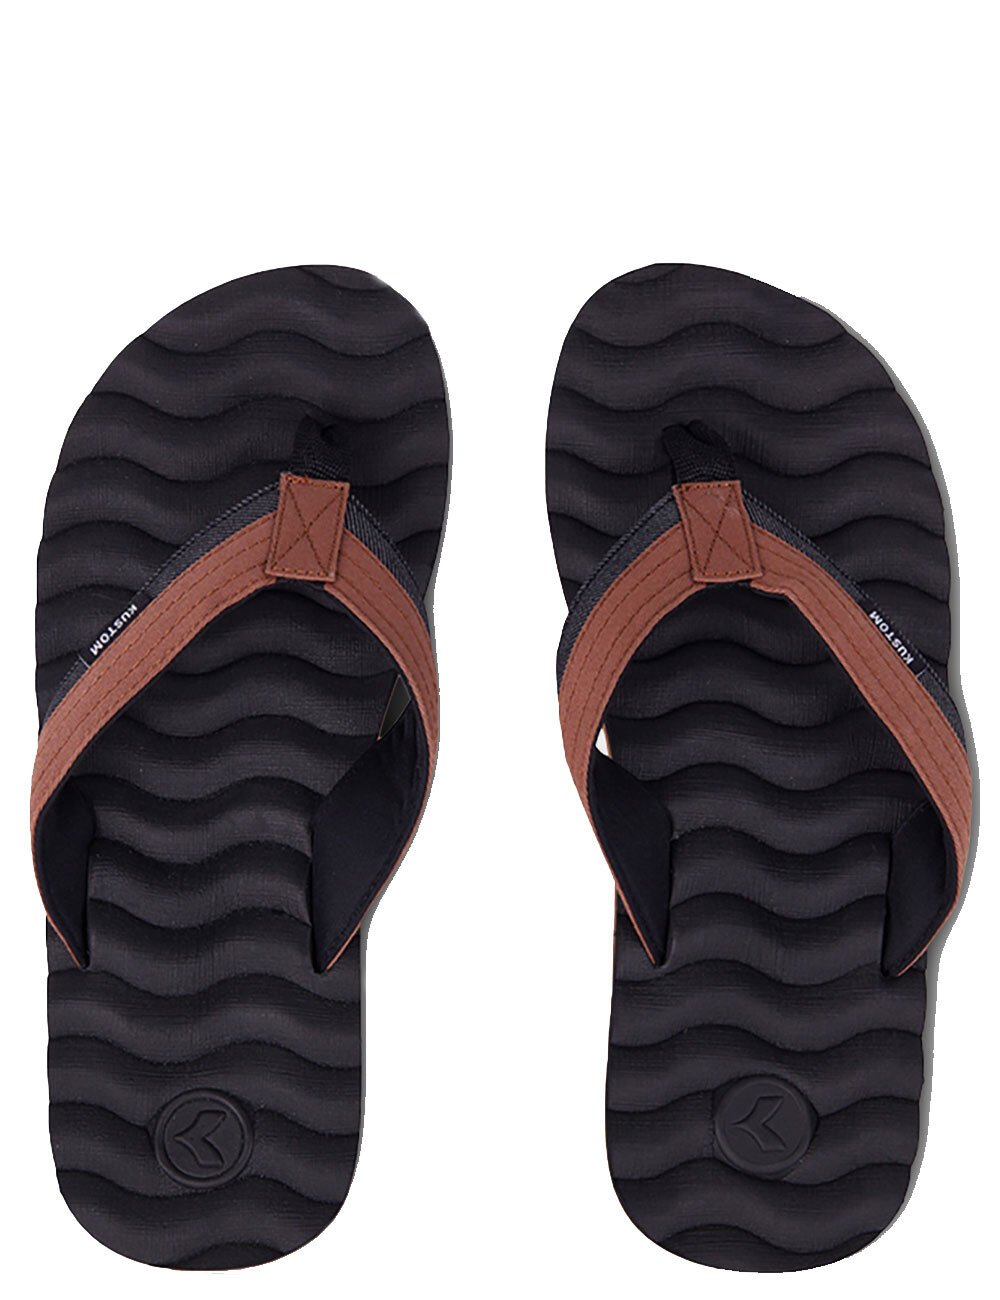 HUMMER JANDAL - Shop Men's Footwear - Shoes, Slides, Jandals & More | Backdoor - KUSTOM S20